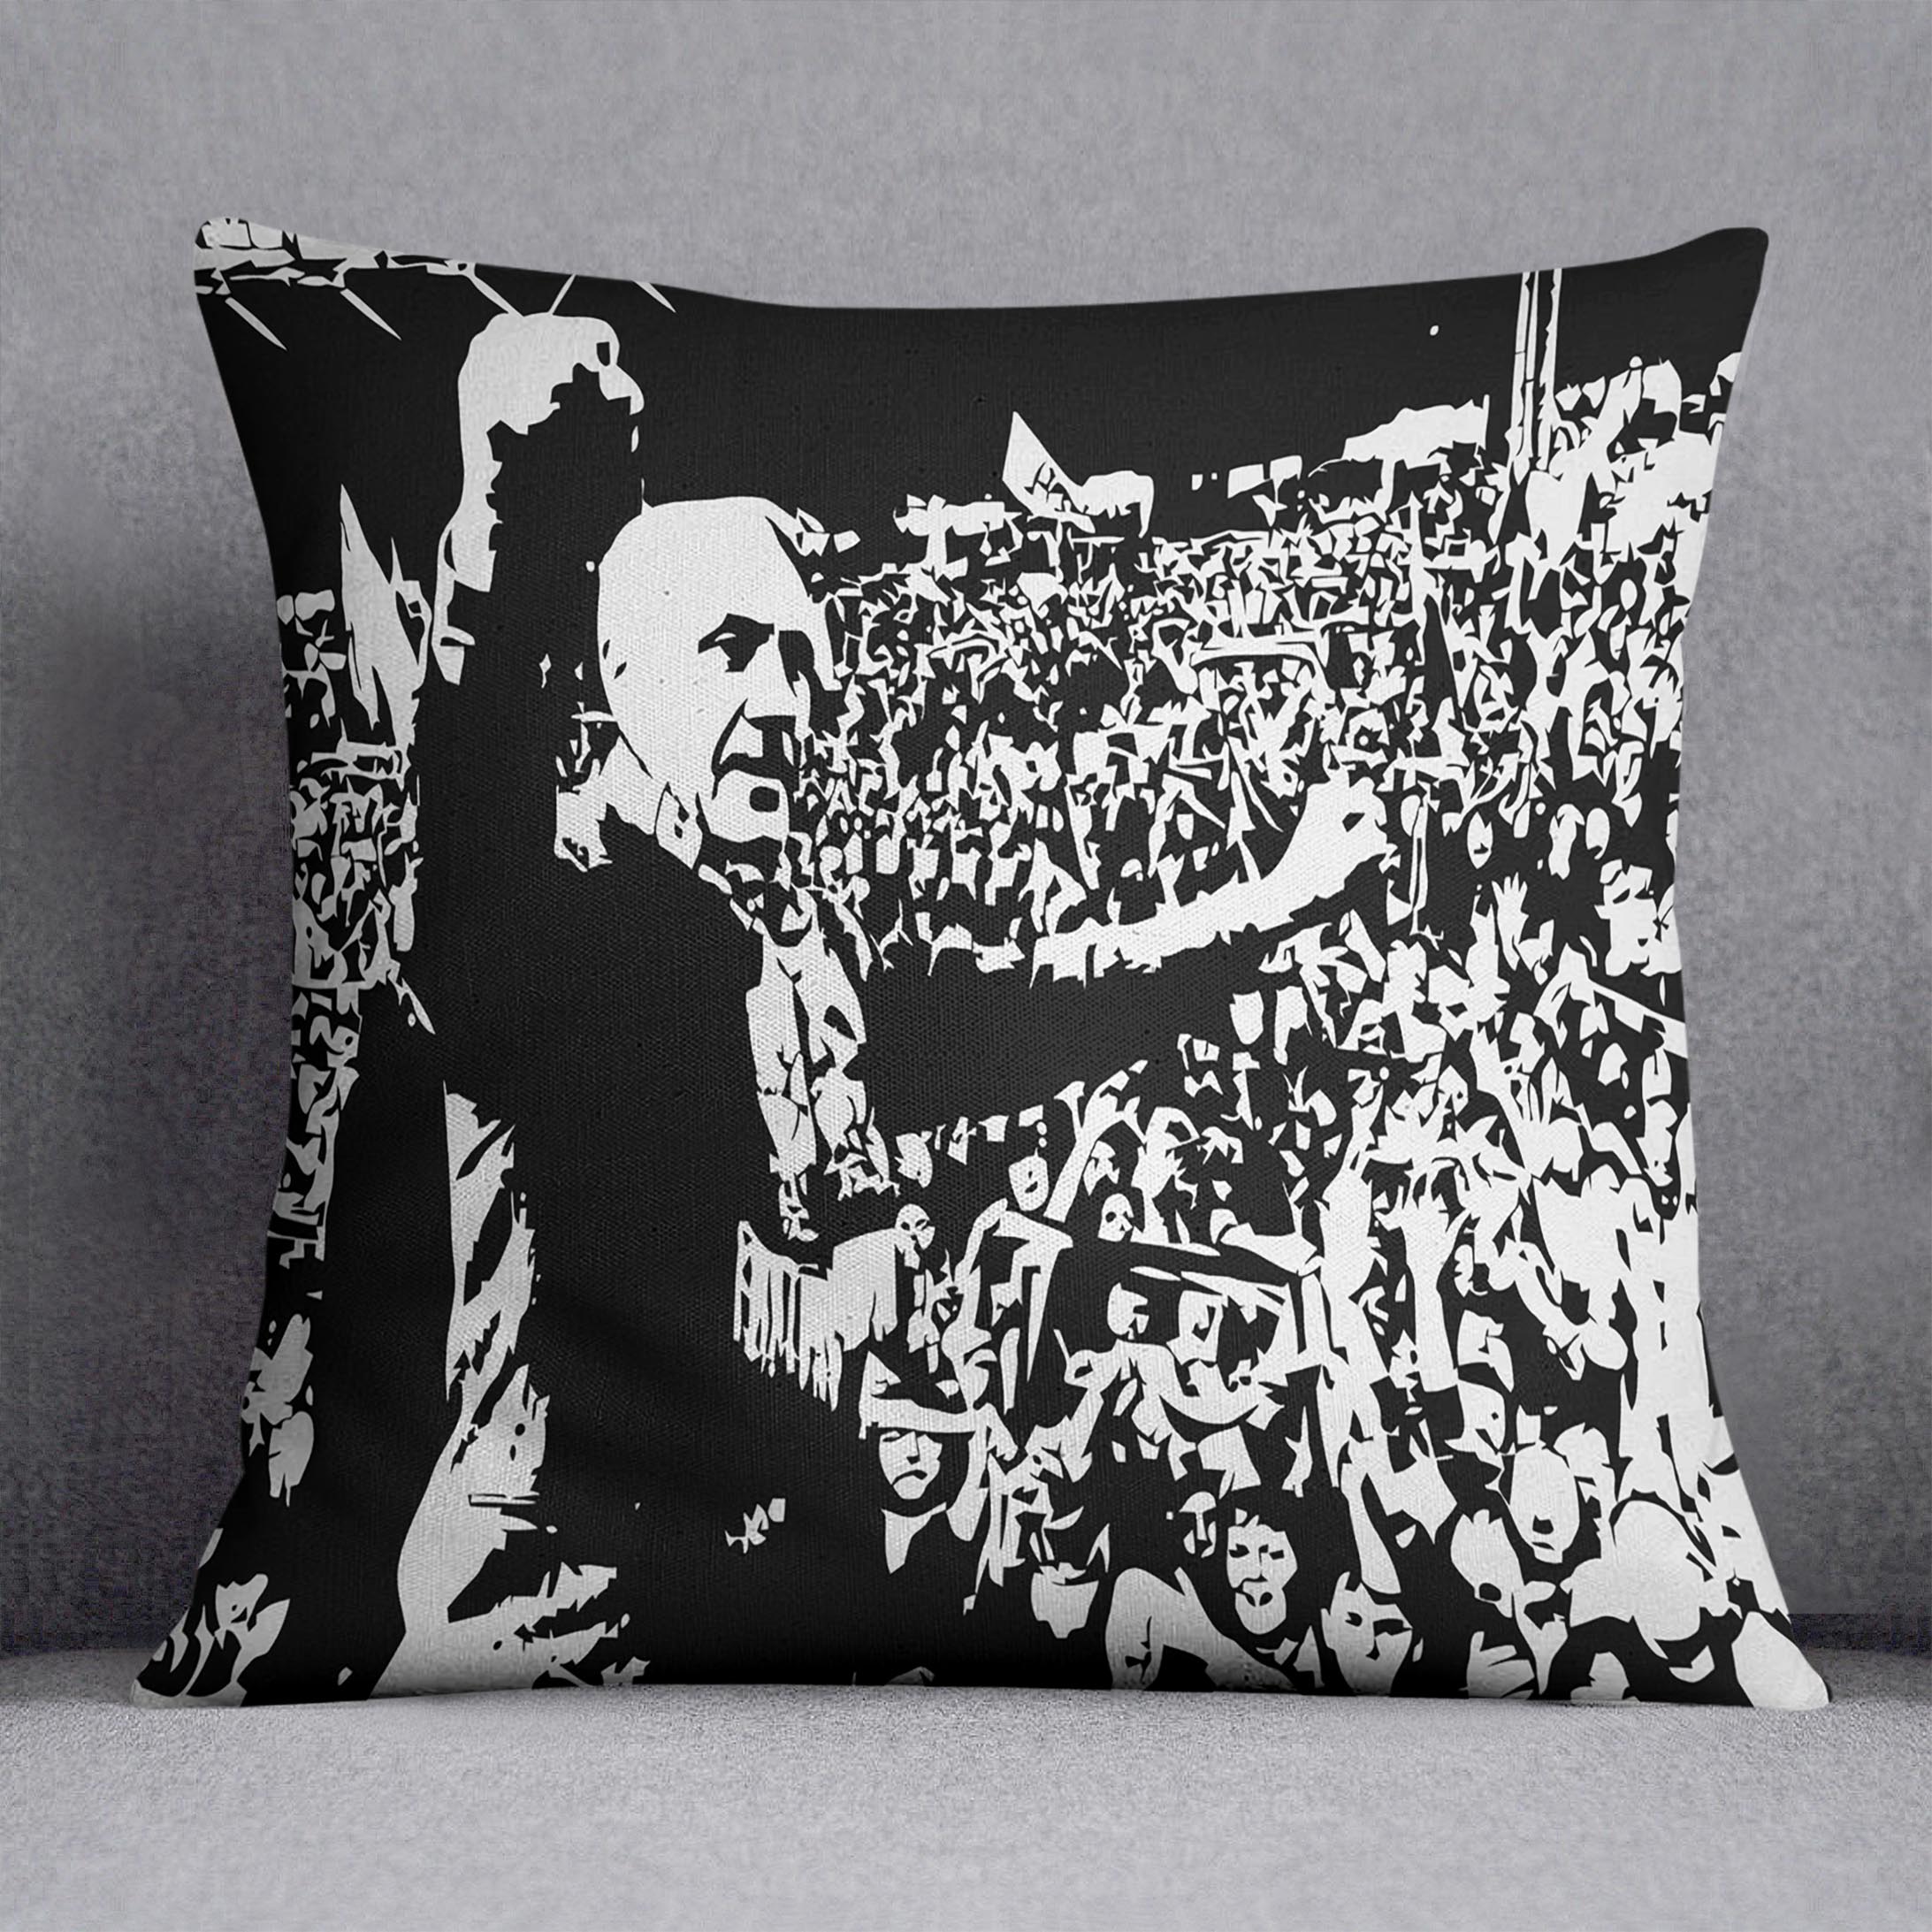 Bill Shankly Cushion